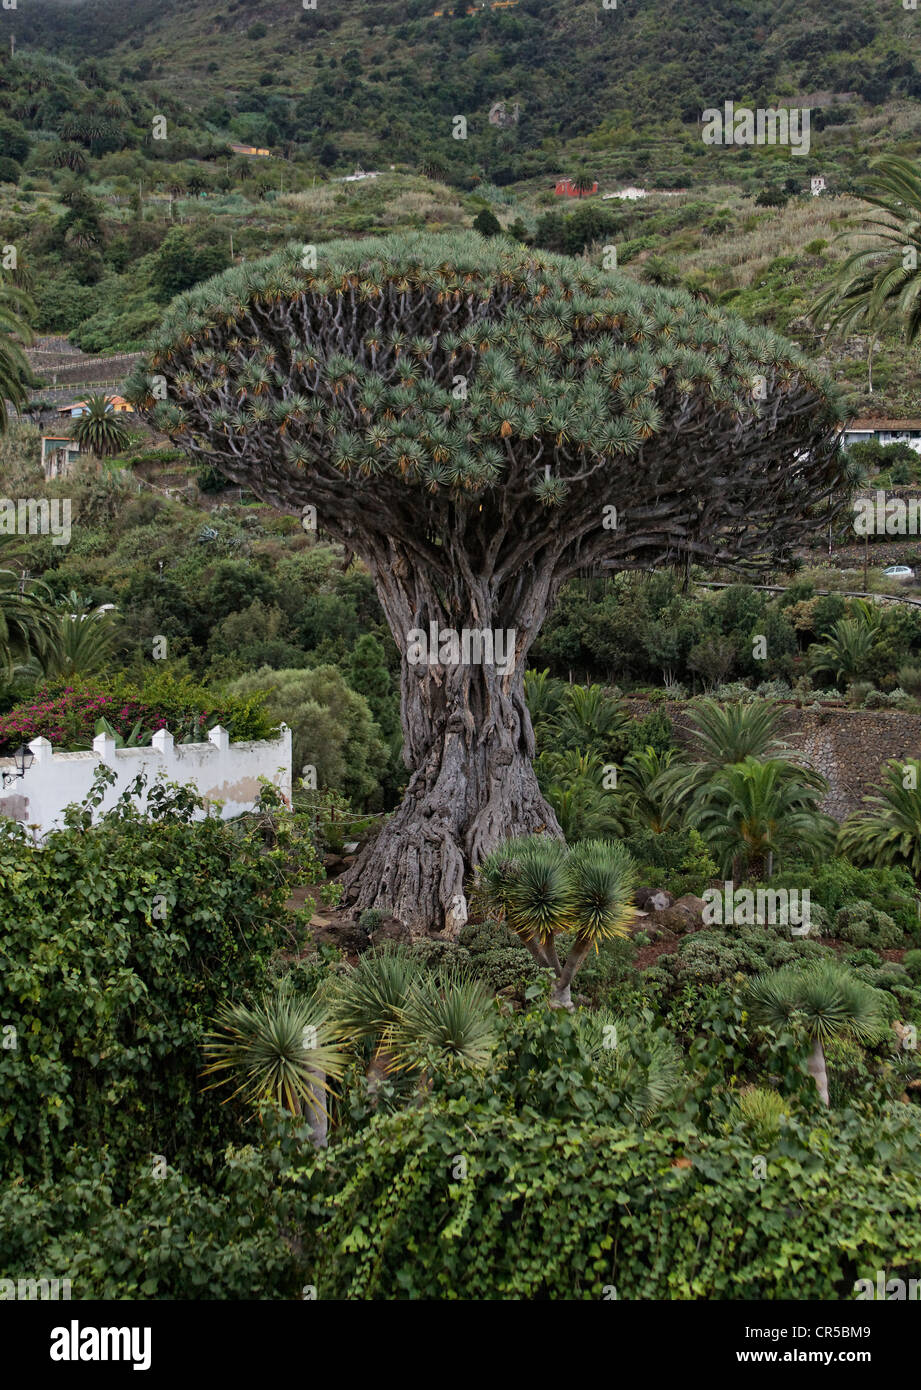 1000 Jahre alter Drachenbaum - Drachenbaum von Icod de los Vinos Stock Photo